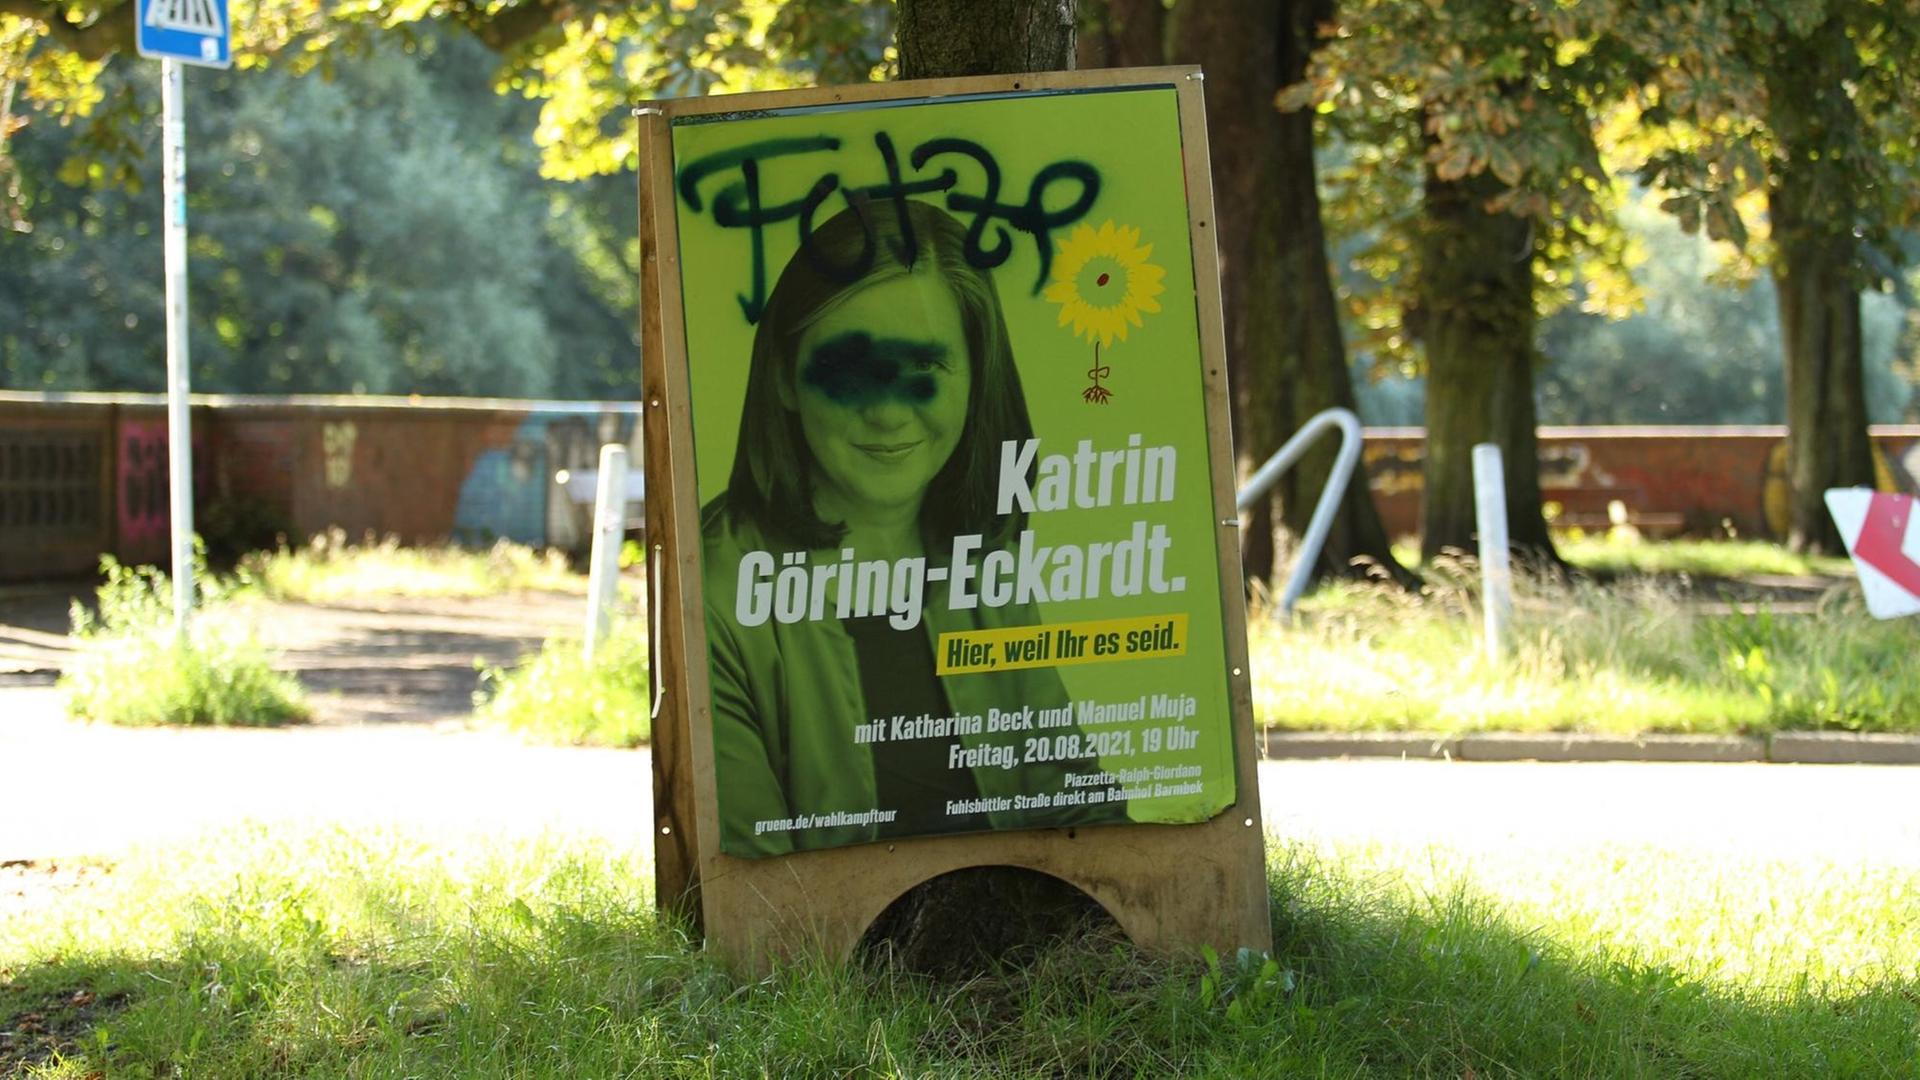 Ein Wahlkampfplakat der Politikerin Katrin Göring-Eckardt von Bündnis 90/Die Grünen im Hamburger Stadtpark wurde mit einem beleidigenden und diskreditierenden Schriftzug beschmiert.